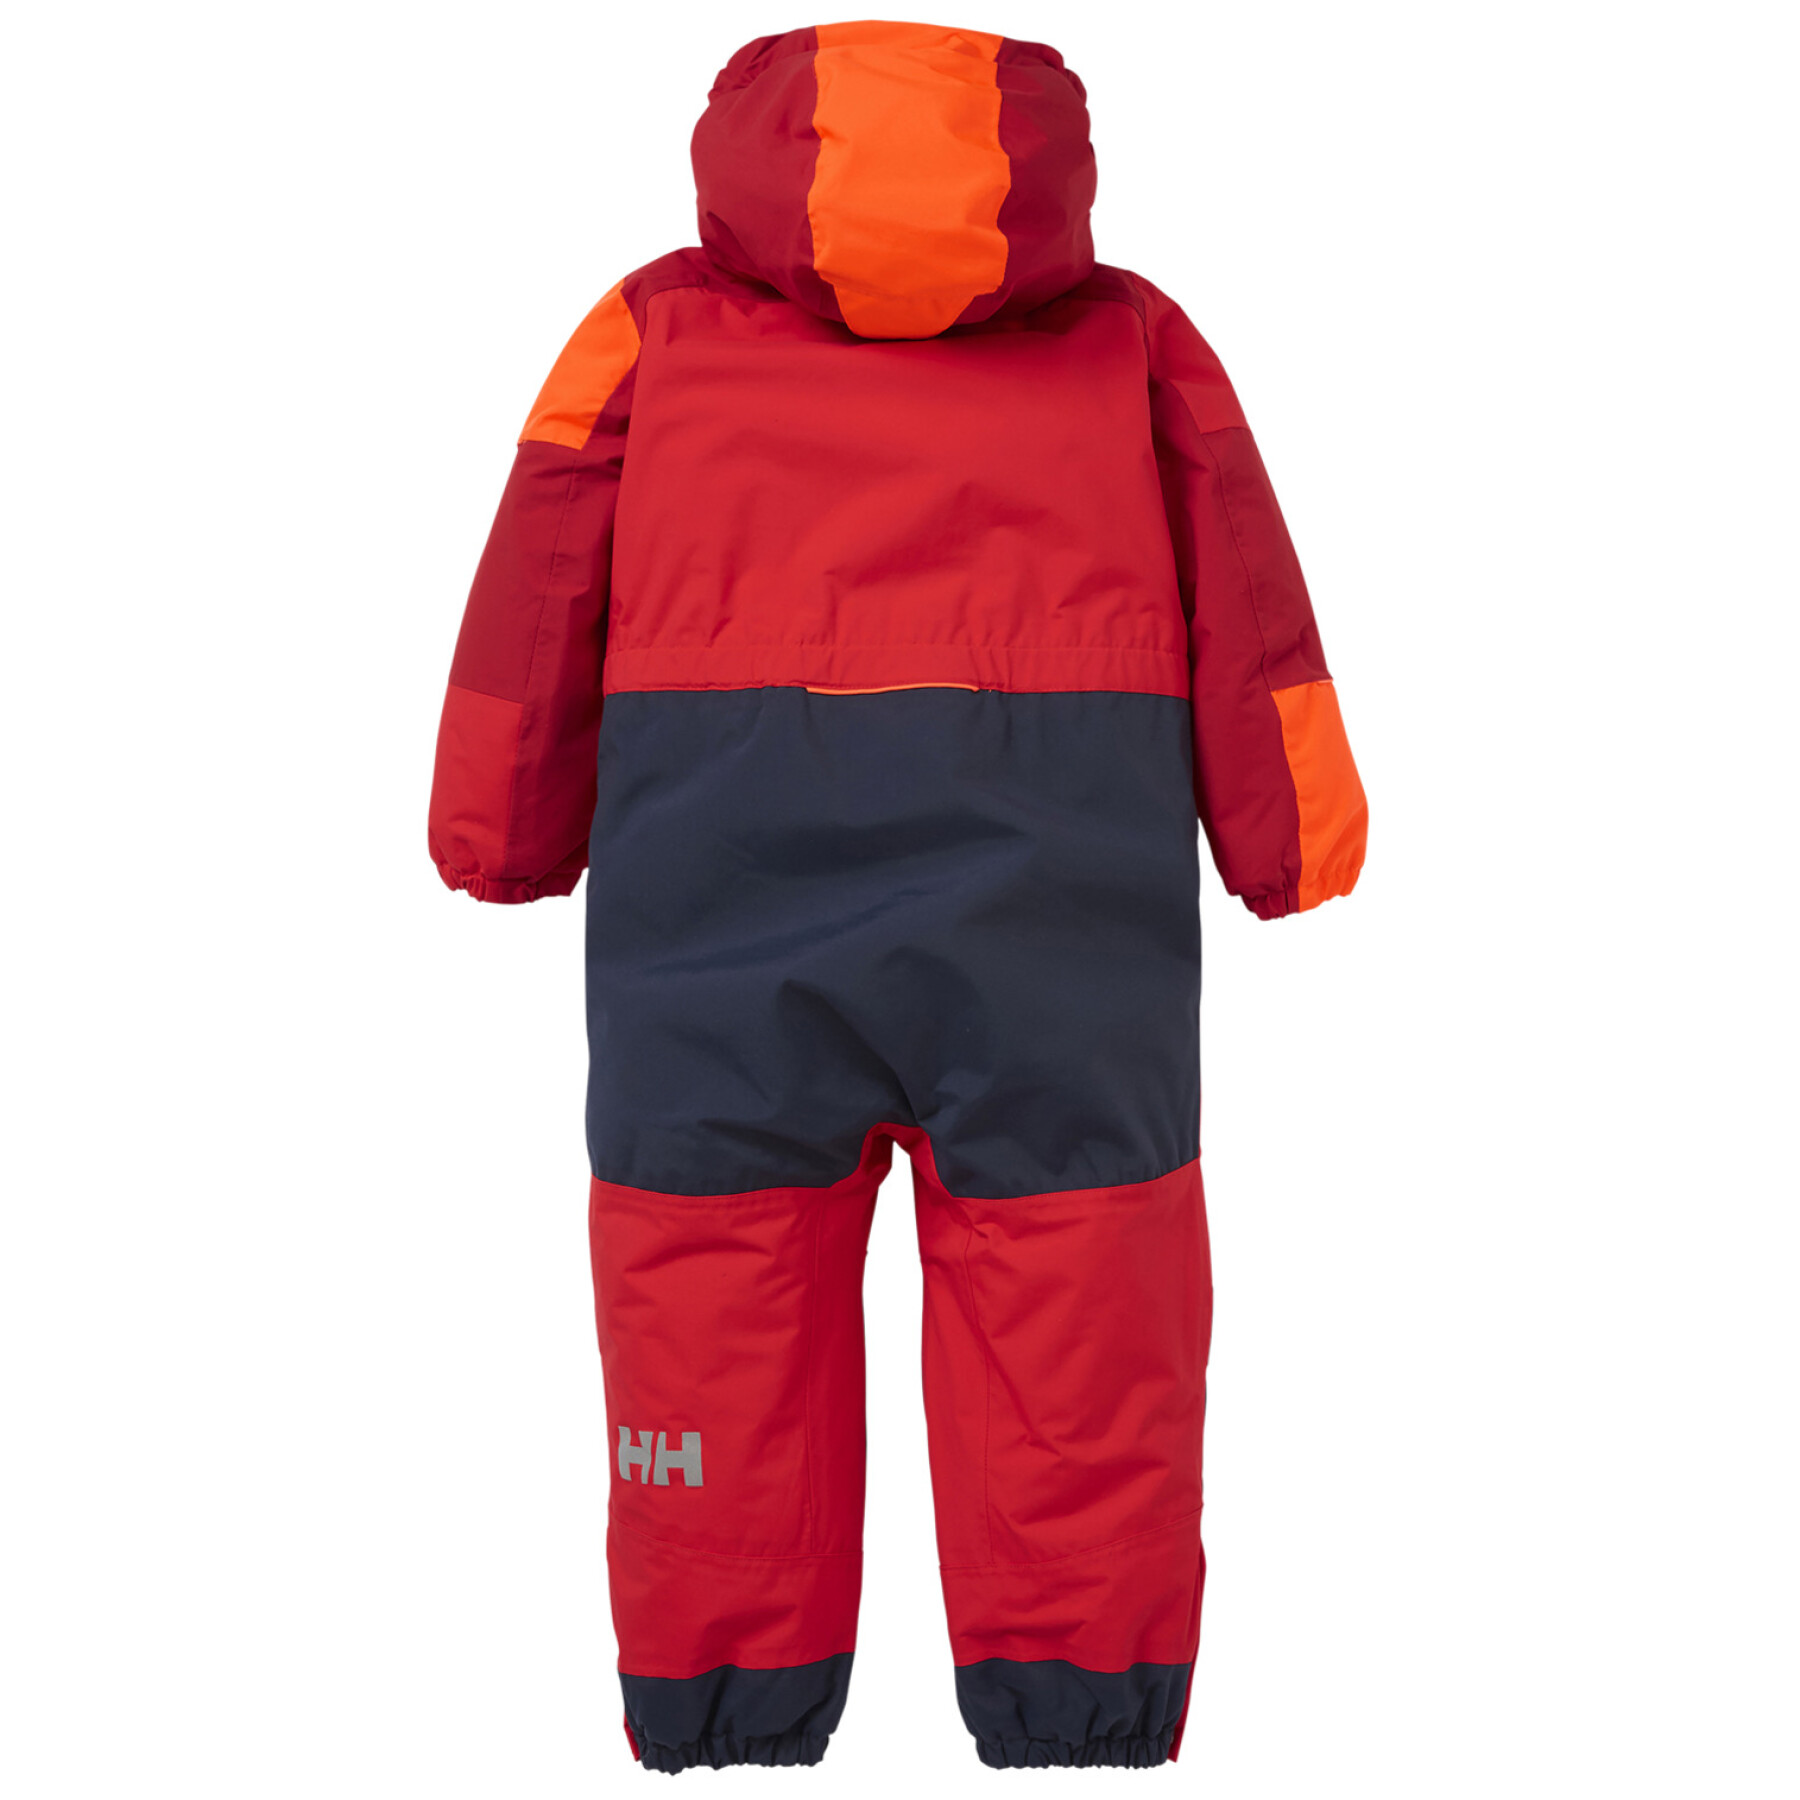 Ski suit for children Helly Hansen Rider 2 ins